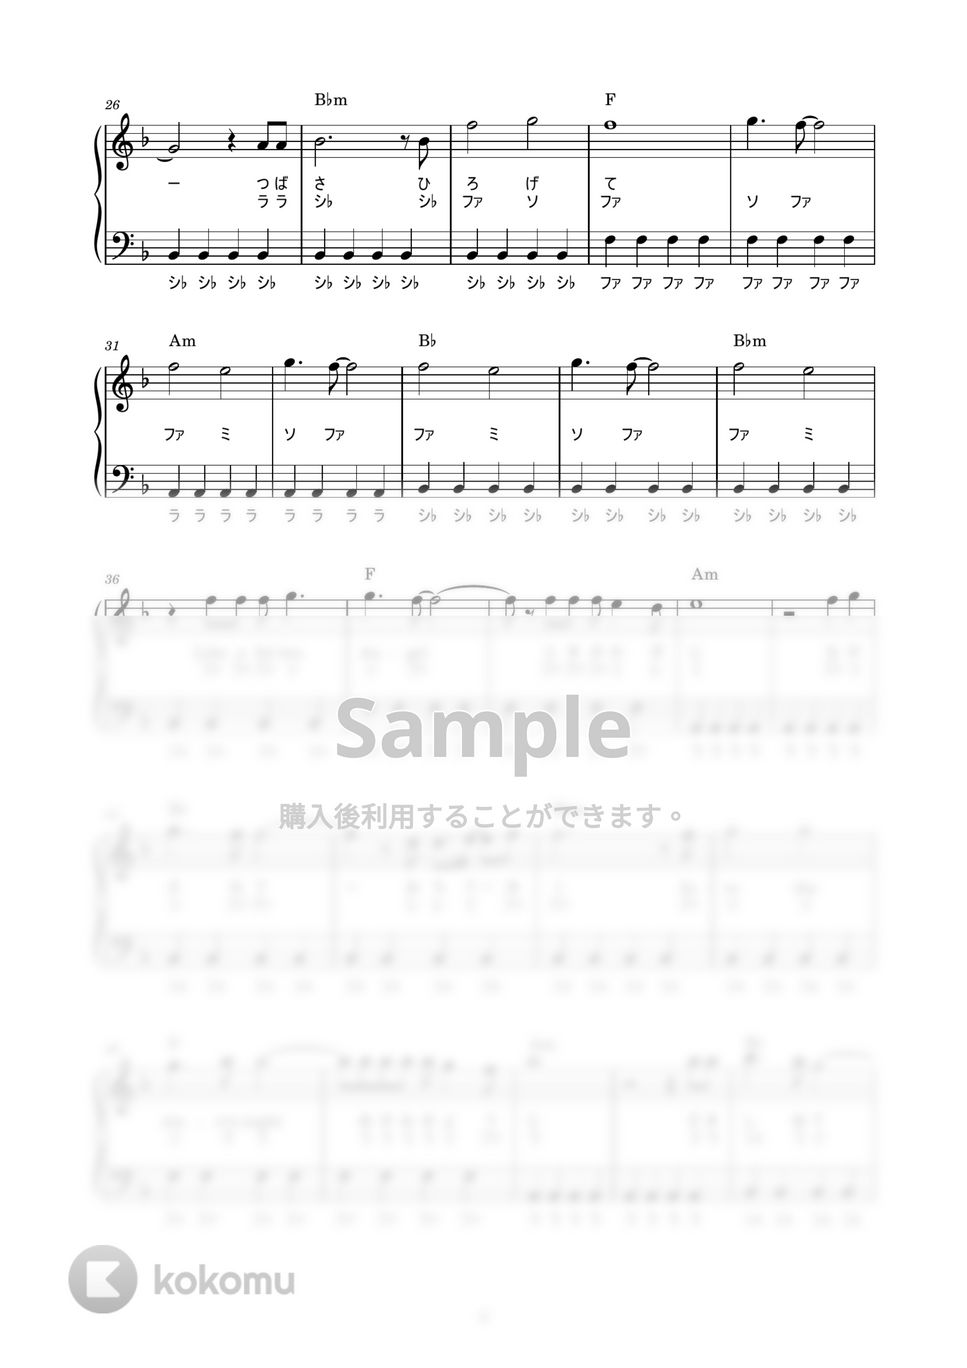 進撃の巨人SEASON 3 - Red Swan (かんたん / 歌詞付き / ドレミ付き / 初心者) by piano.tokyo